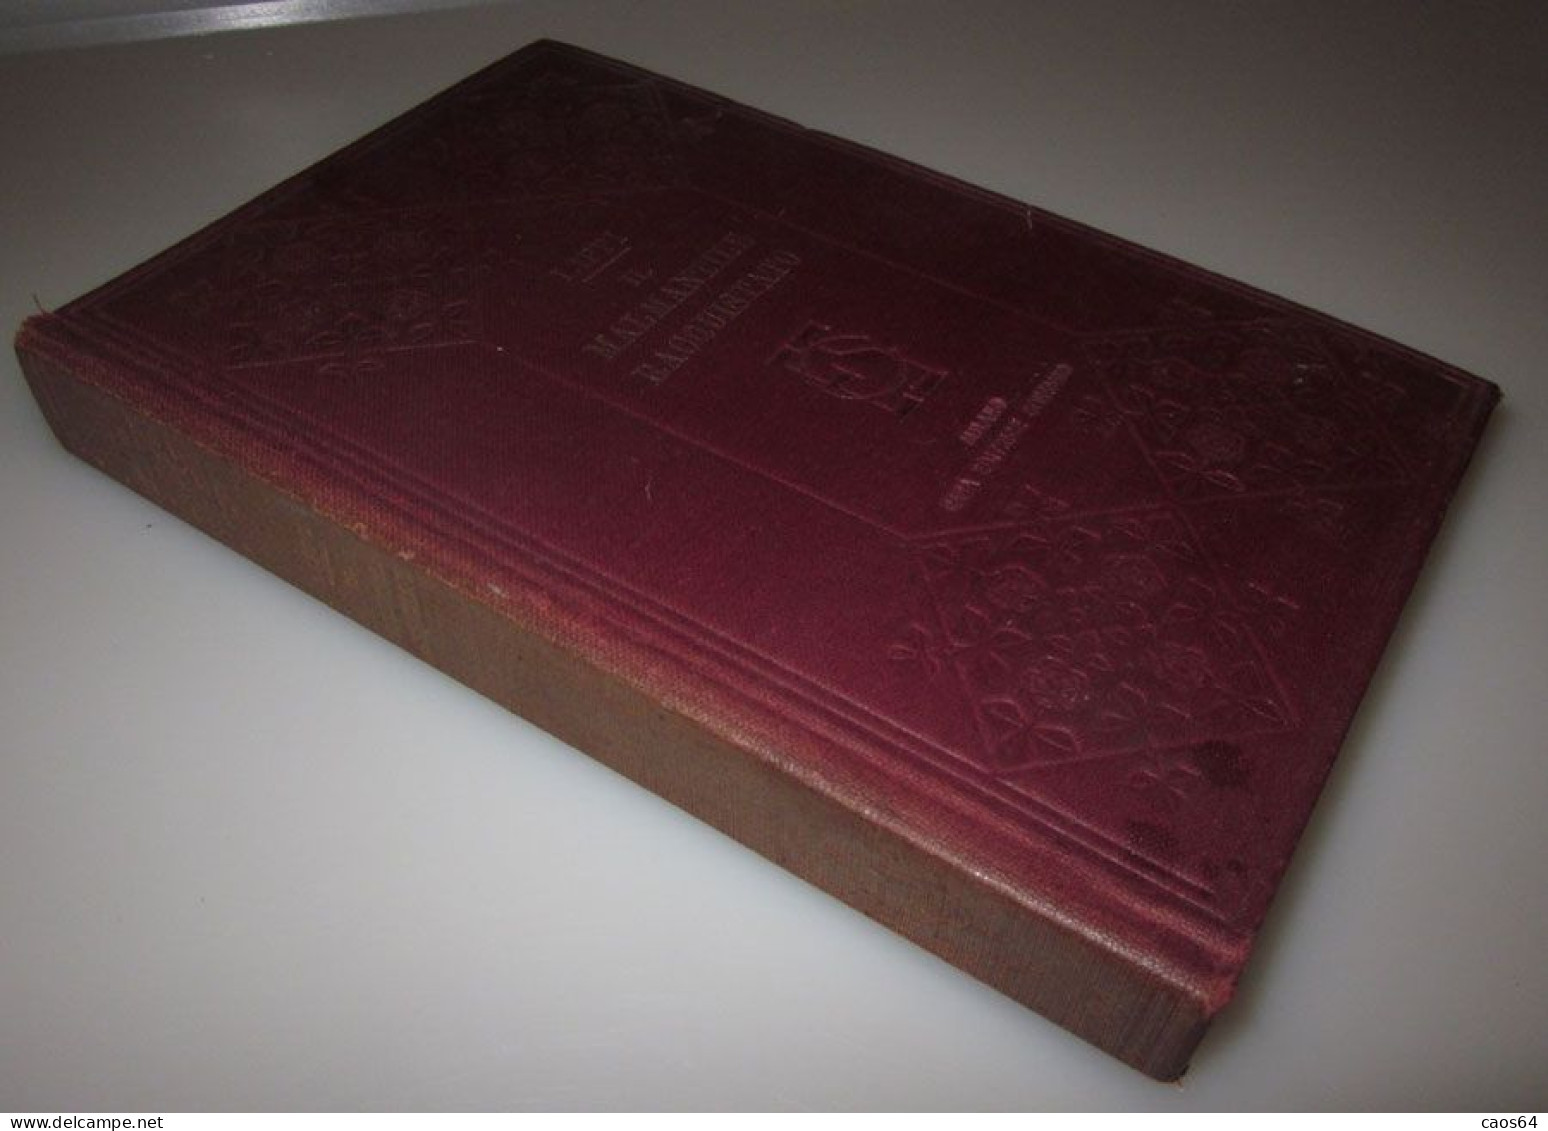 Lippi Il Malmantile Racquistato Sonzogno 1910 Volume Unico - Libri Antichi